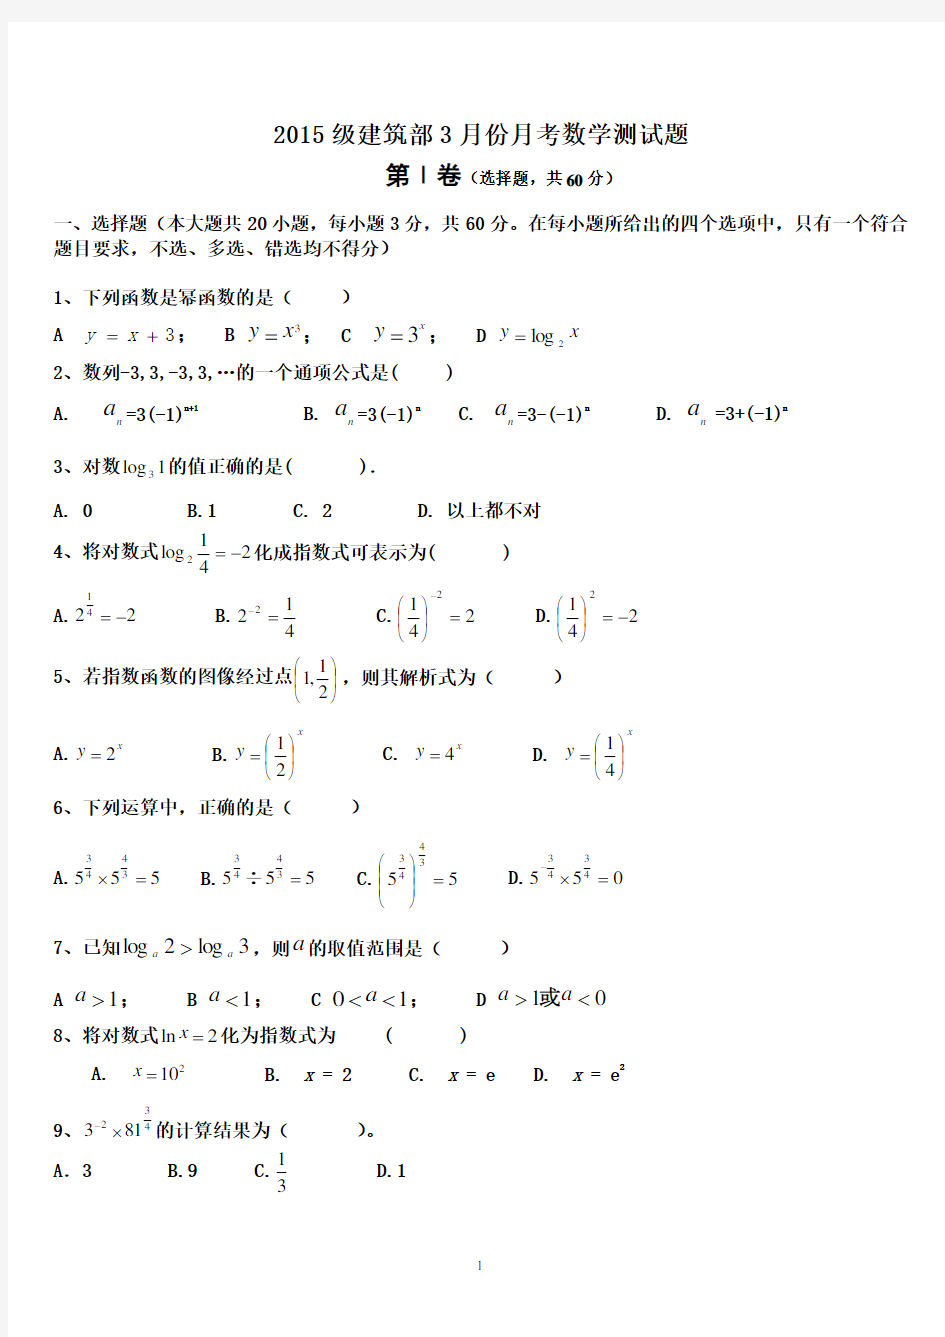 (完整版)中职数学第一册指数函数、对数函数测试题